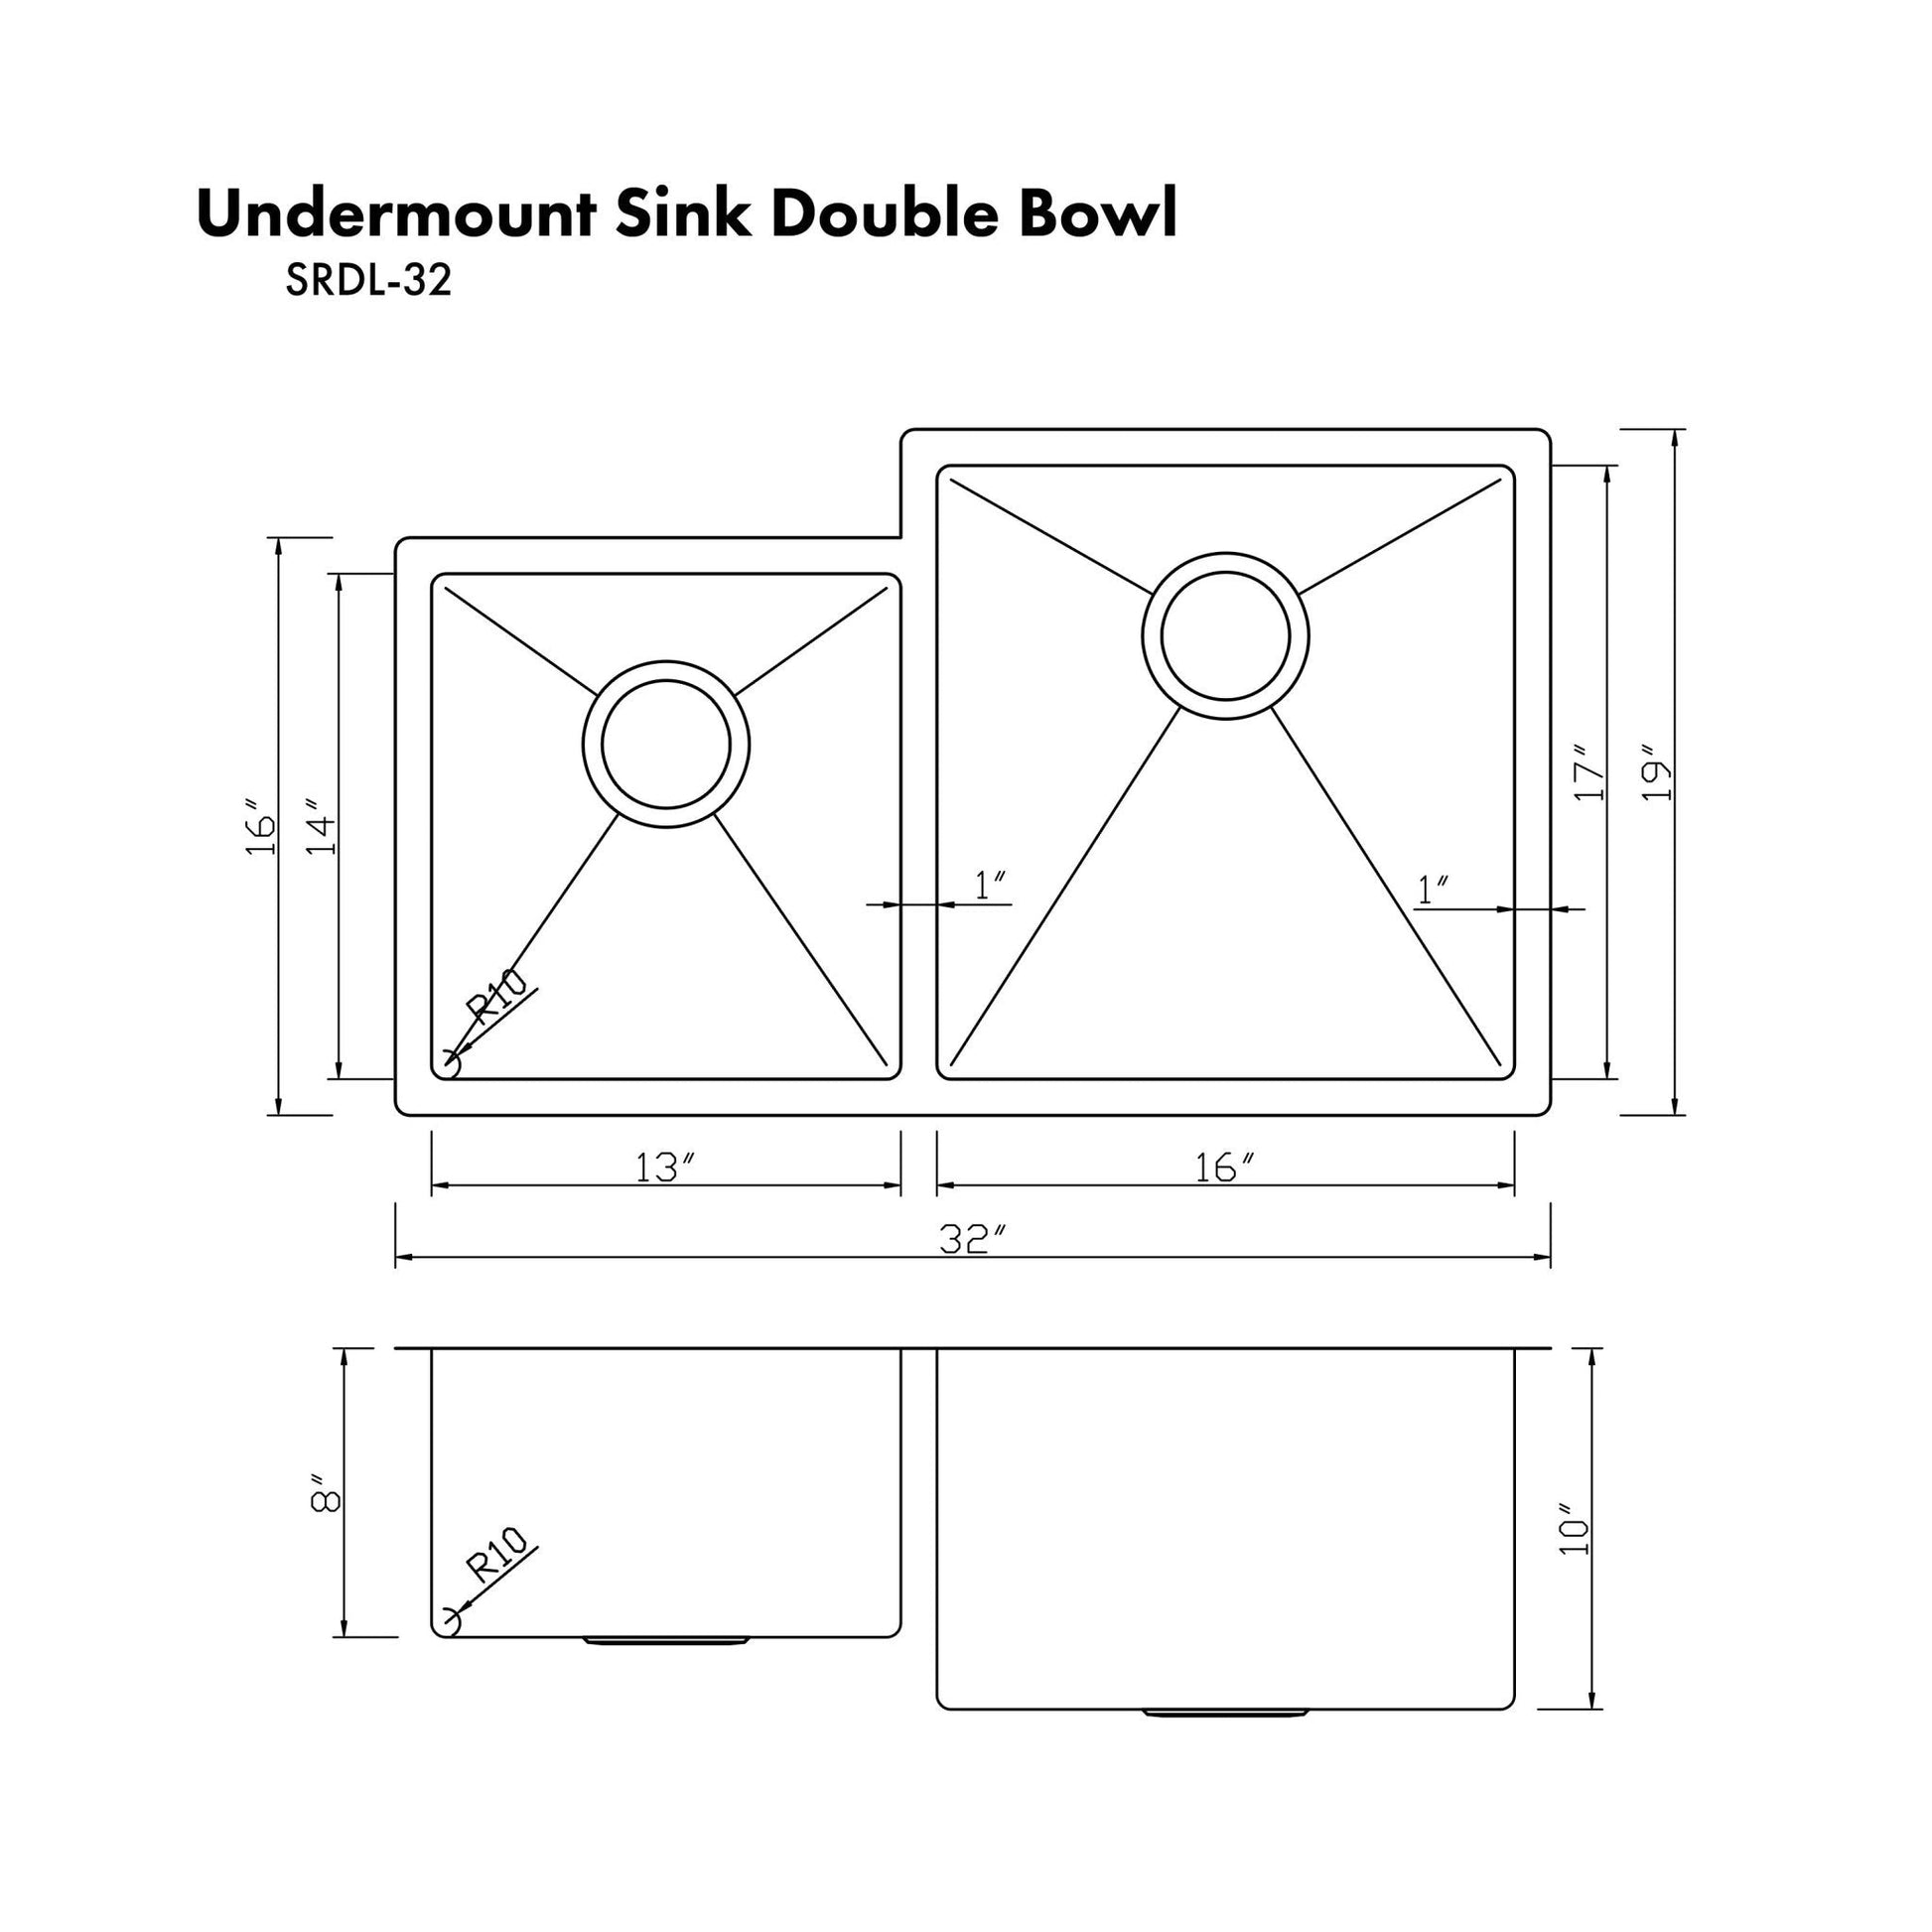 ZLINE 32 in. Jackson Undermount Double Bowl Kitchen Sink with Bottom Grid (SRDL-32) ZLINE Kitchen and Bath